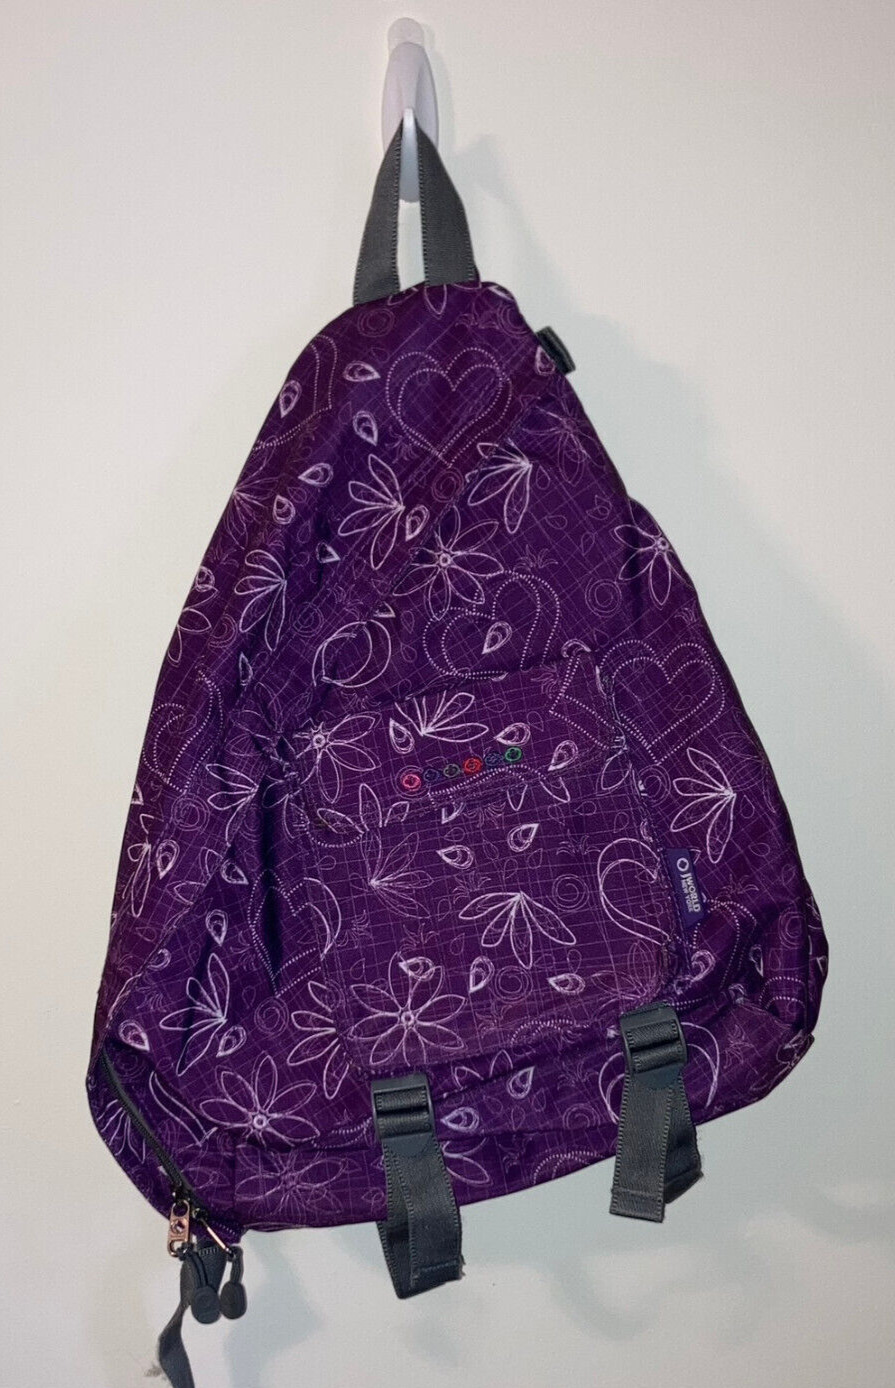 JWorld Sling Bag Backpack Sling Purple Pink Teal Paisley Print Large